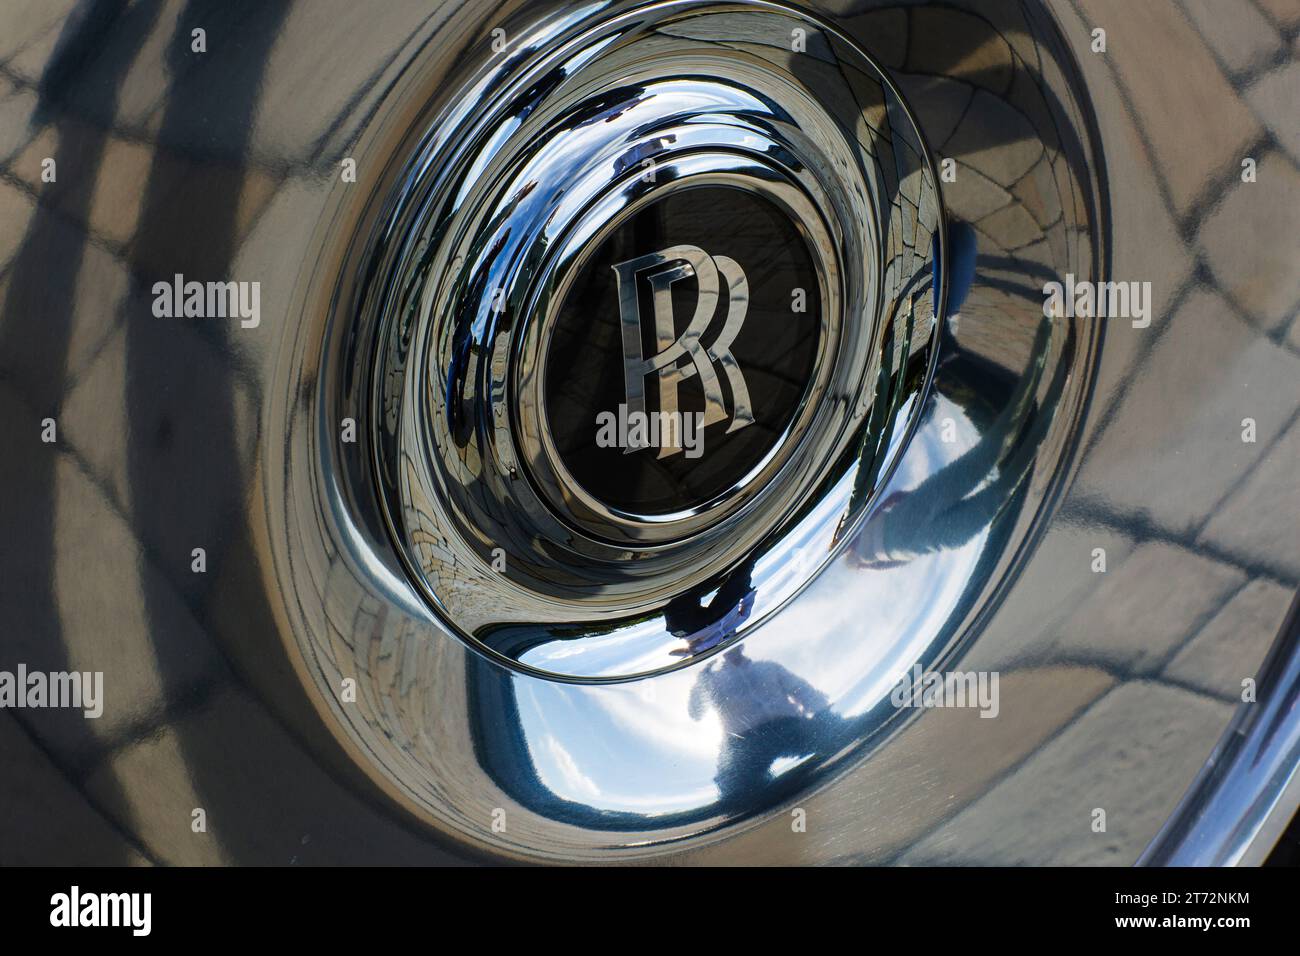 Äußerste Nahaufnahme des Fahrzeugrads und der Radkappe mit Rolls Royce Double R-Logo in der Mitte Stockfoto